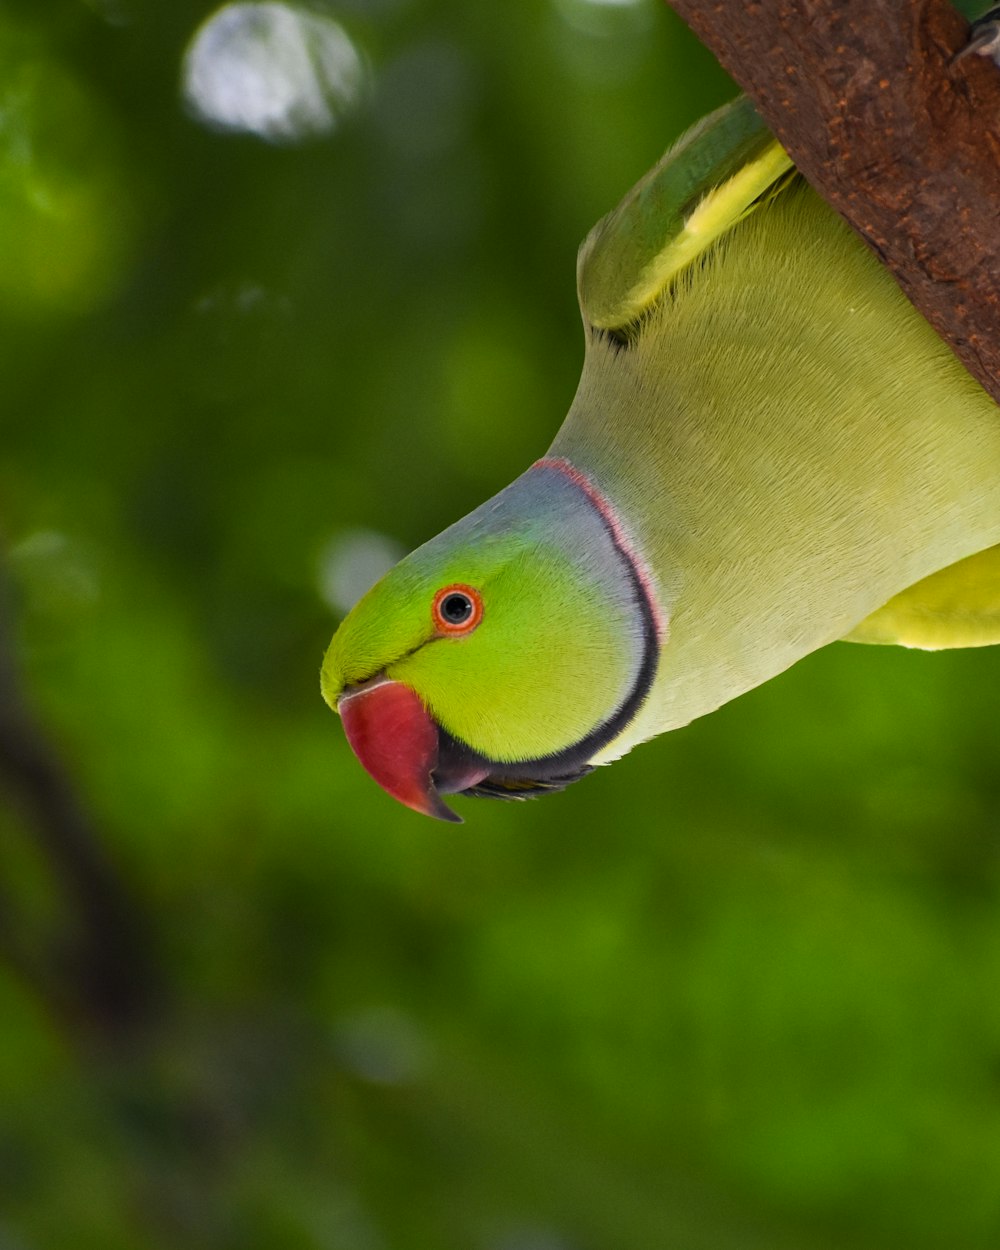 grüner und gelber Vogel am braunen Ast